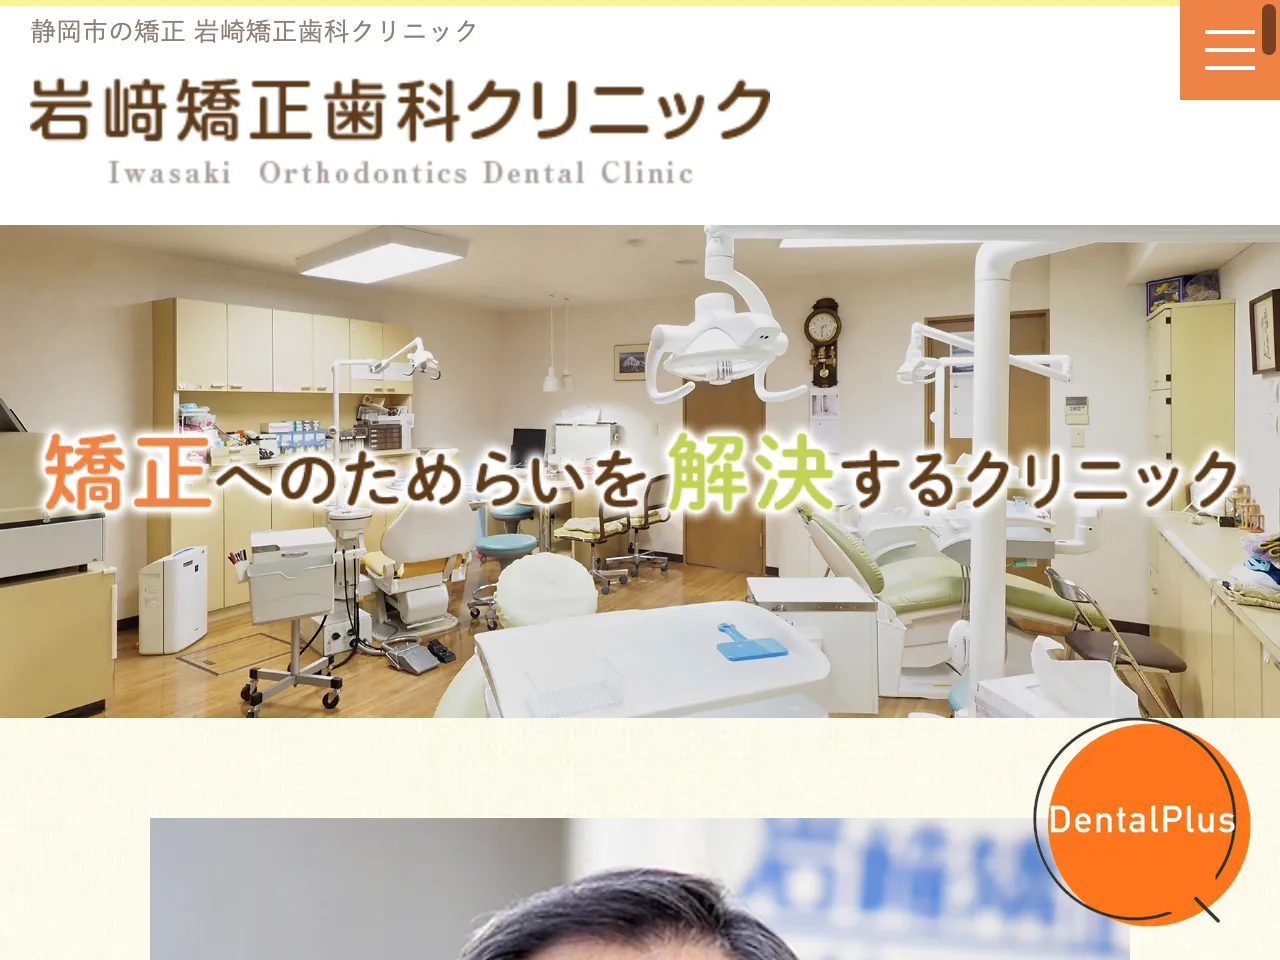 岩崎矯正歯科クリニックのウェブサイト